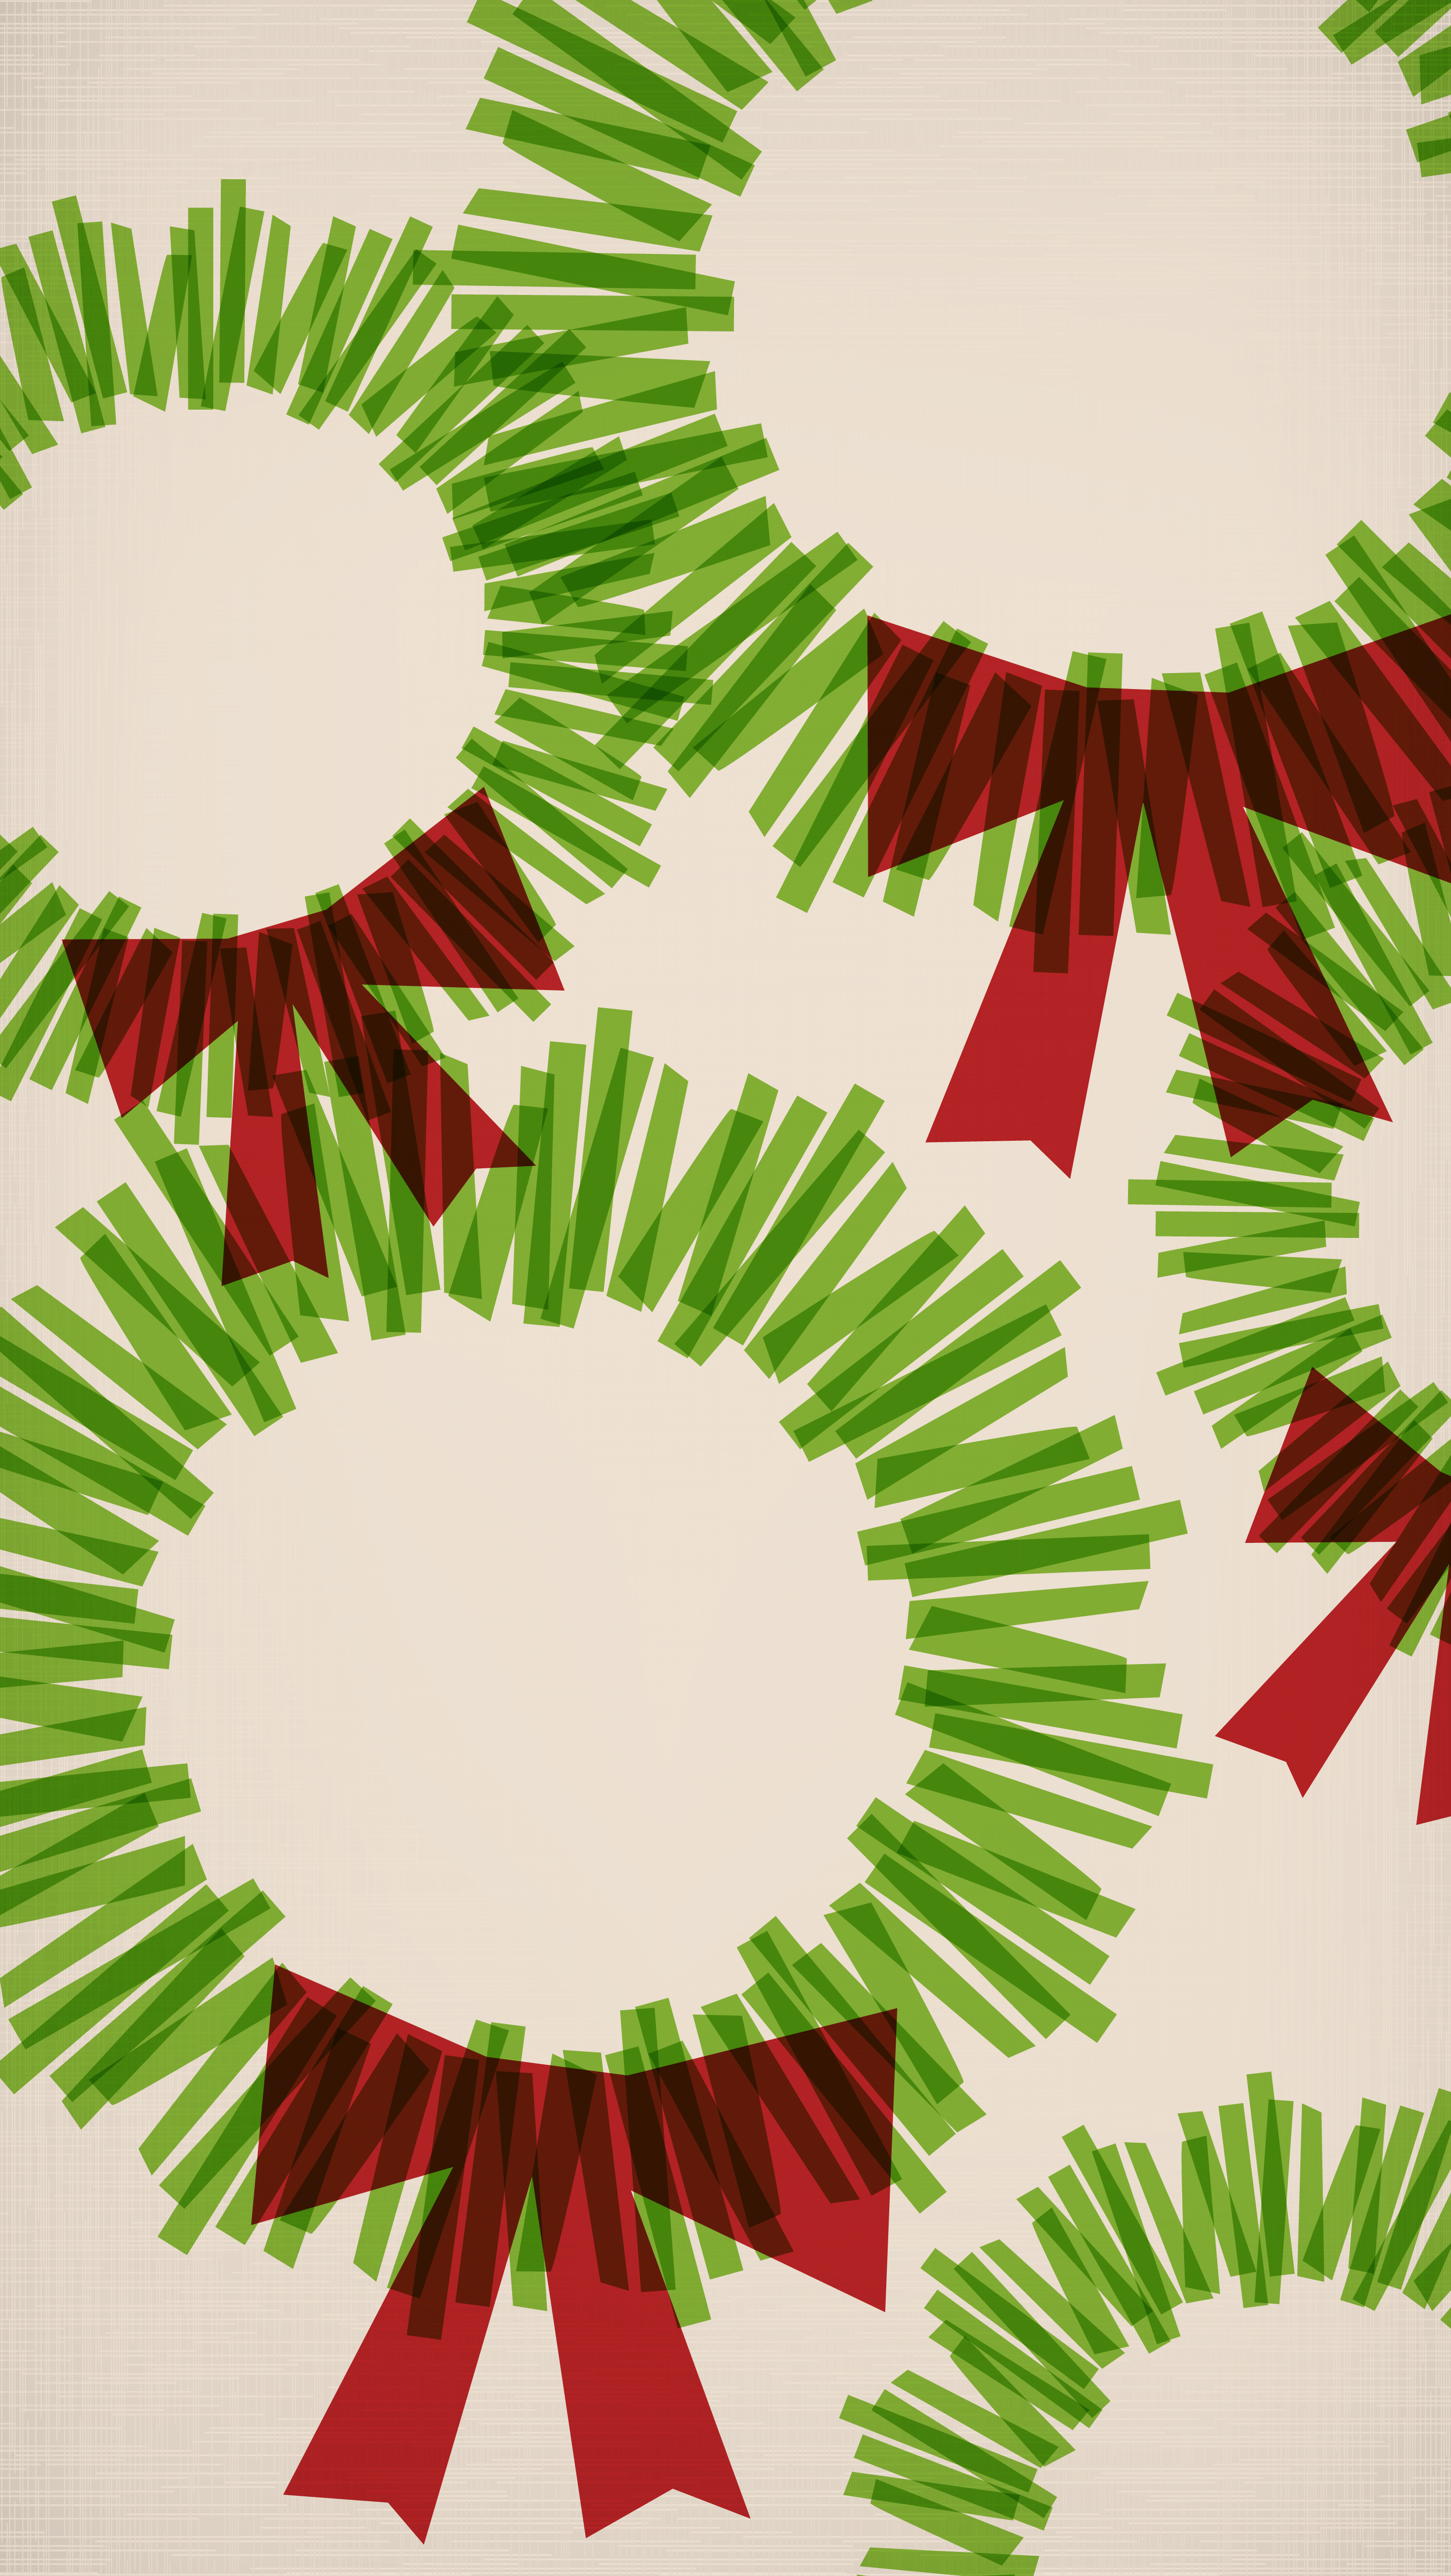 dezember iphone wallpaper,weihnachtsdekoration,blatt,kranz,stechpalme,pflanze